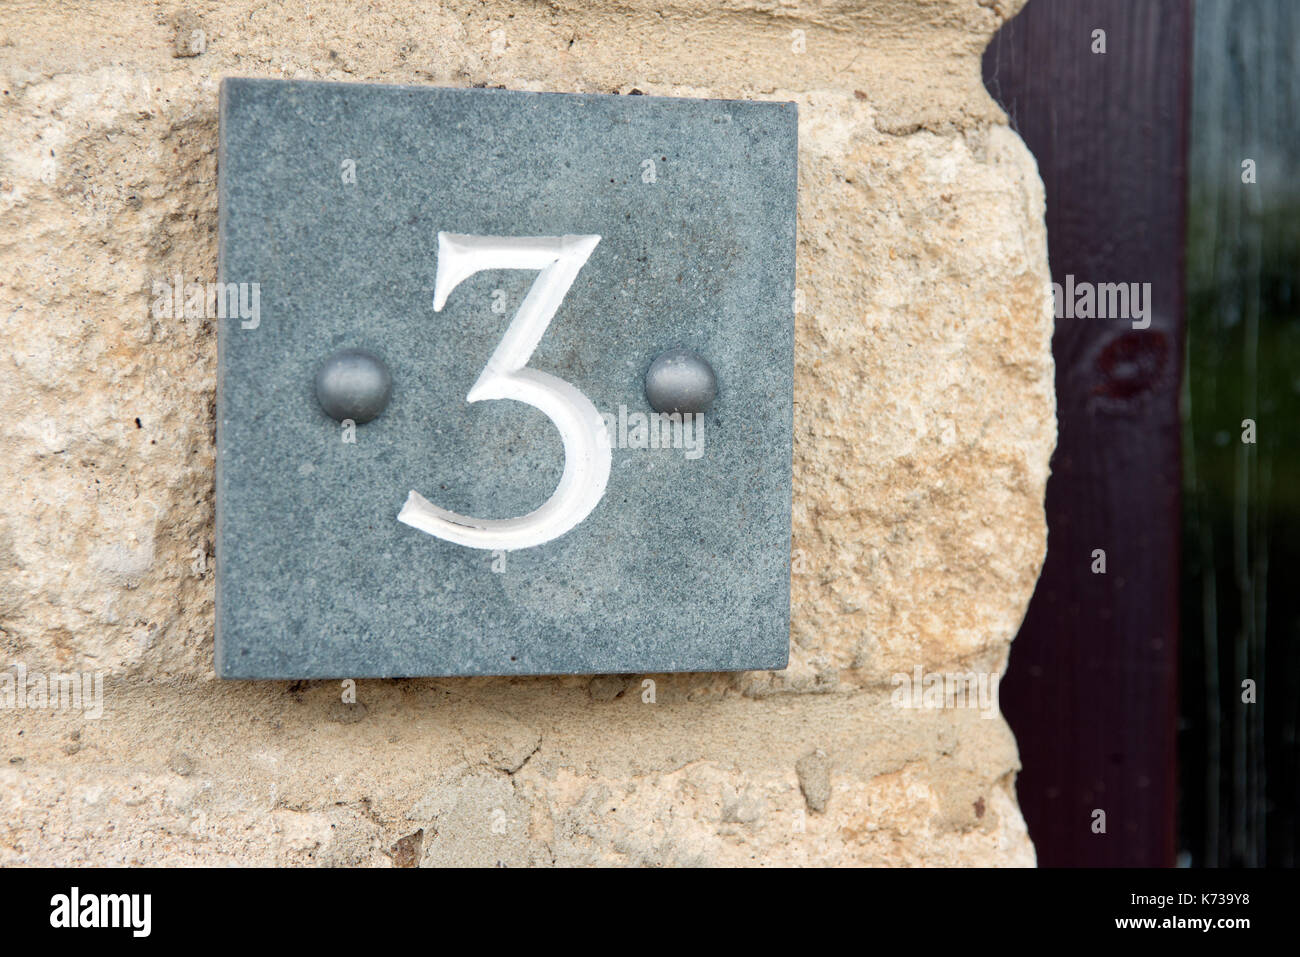 Le nombre trois gravées dans une plaque en ardoise, fixés à un mur d'identifier l'adresse d'une maison. Banque D'Images